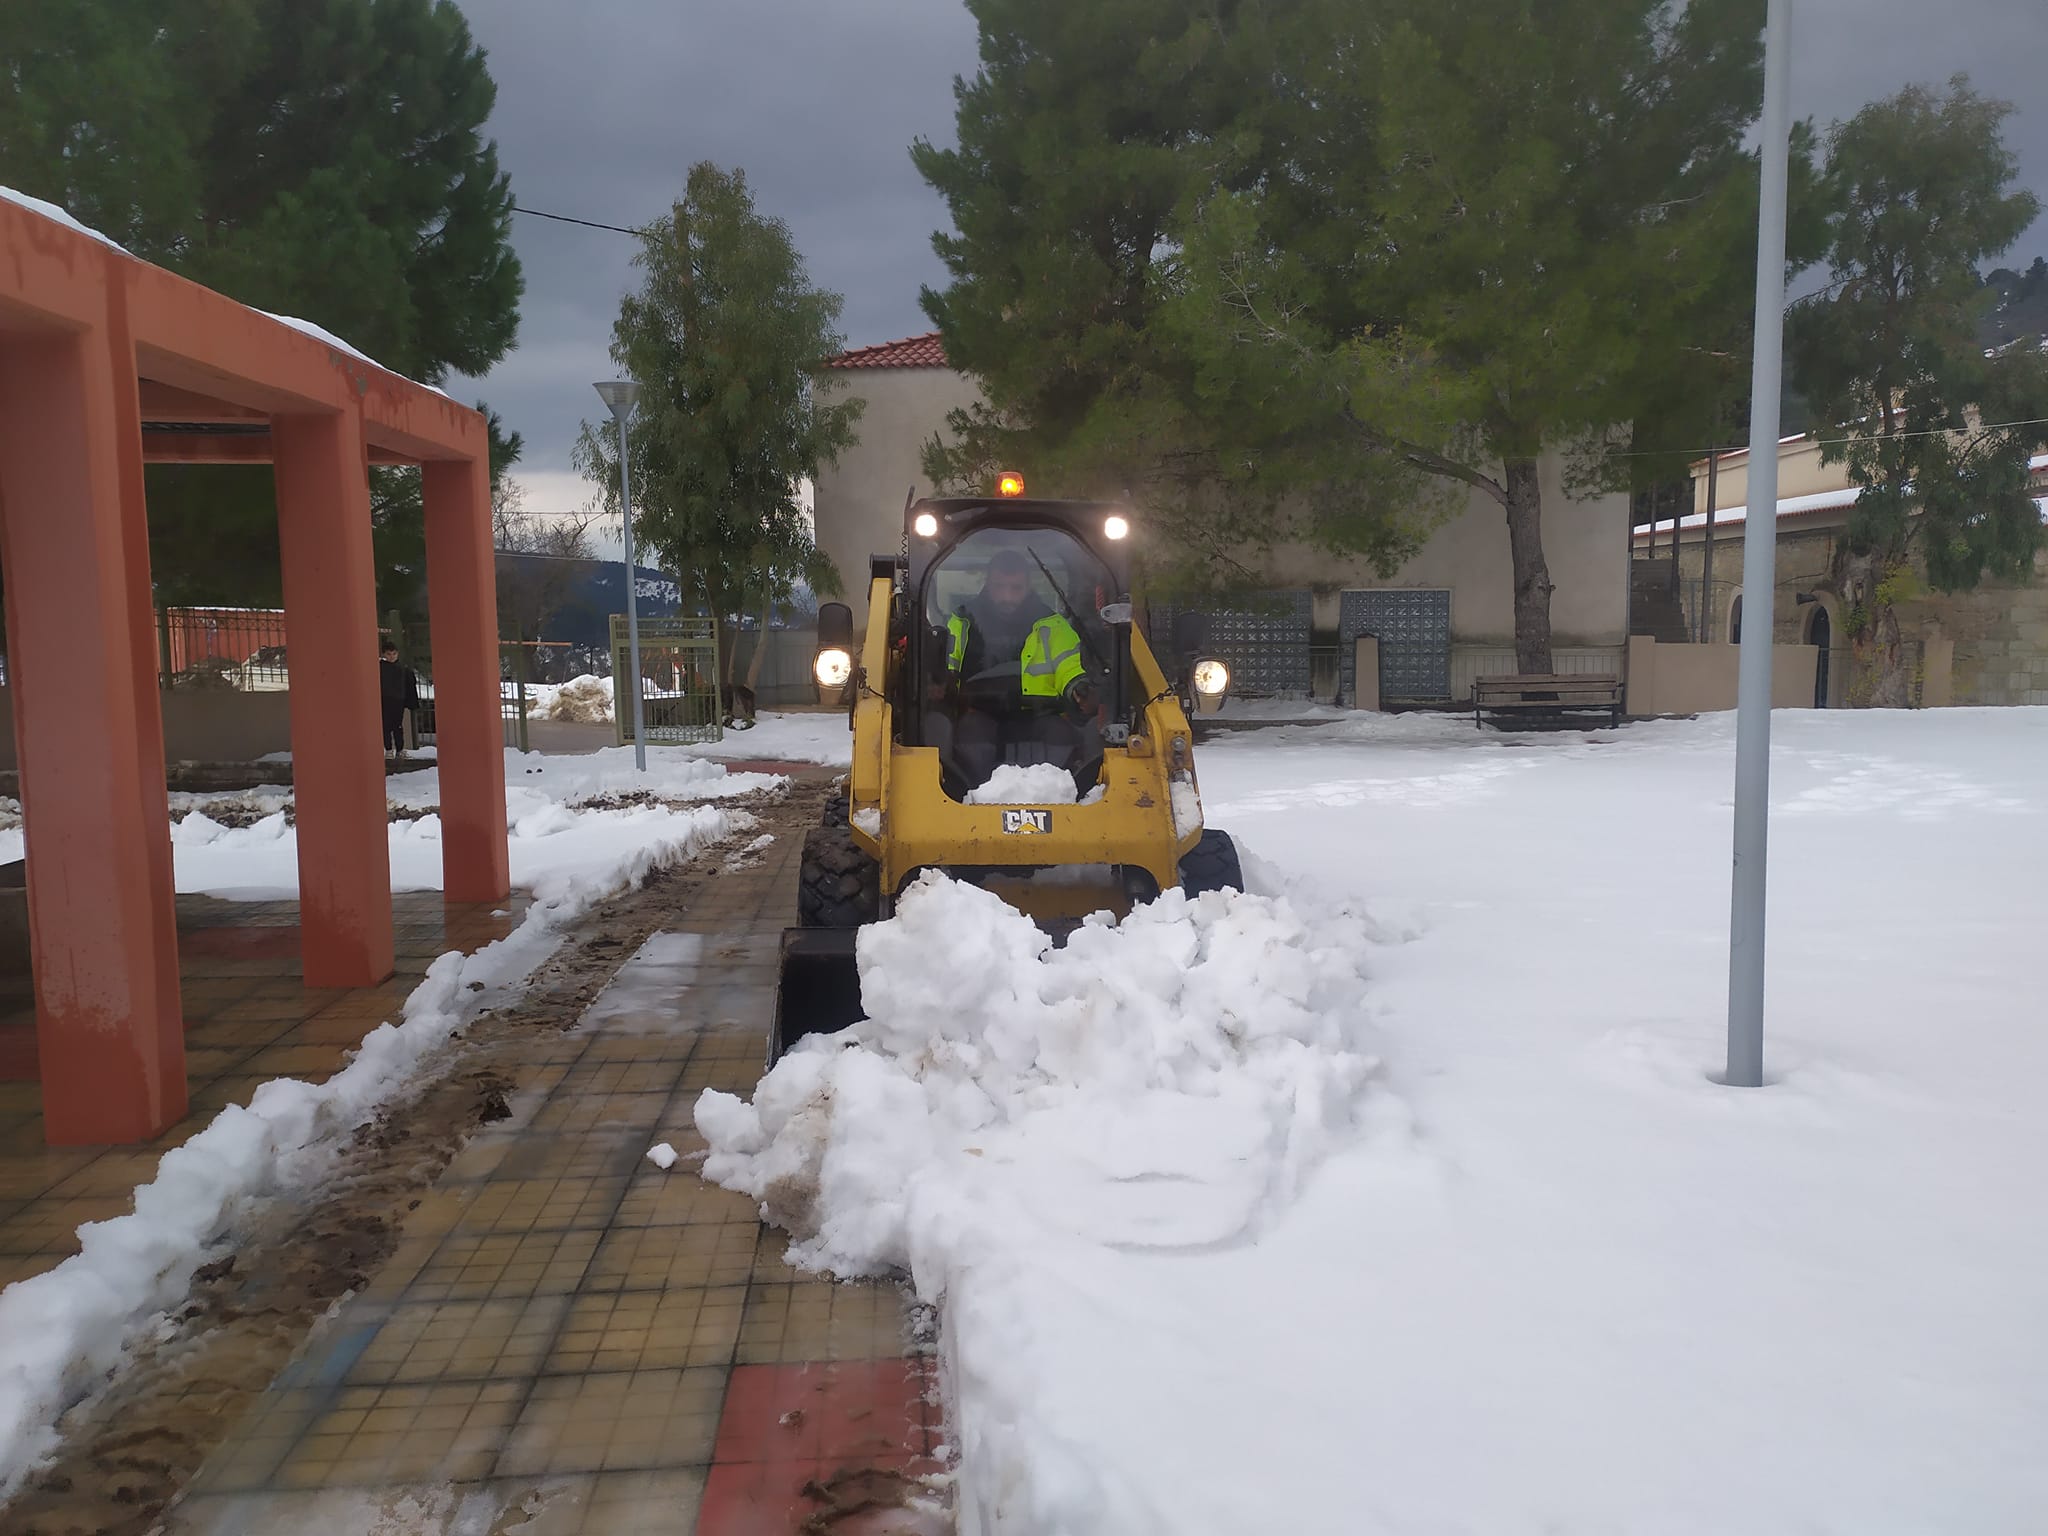 Εύβοια: Καθαρίστηκε από τα χιόνια το δημοτικό σχολείο Μίστρου, έτοιμο να υποδεχθεί τους μαθητές